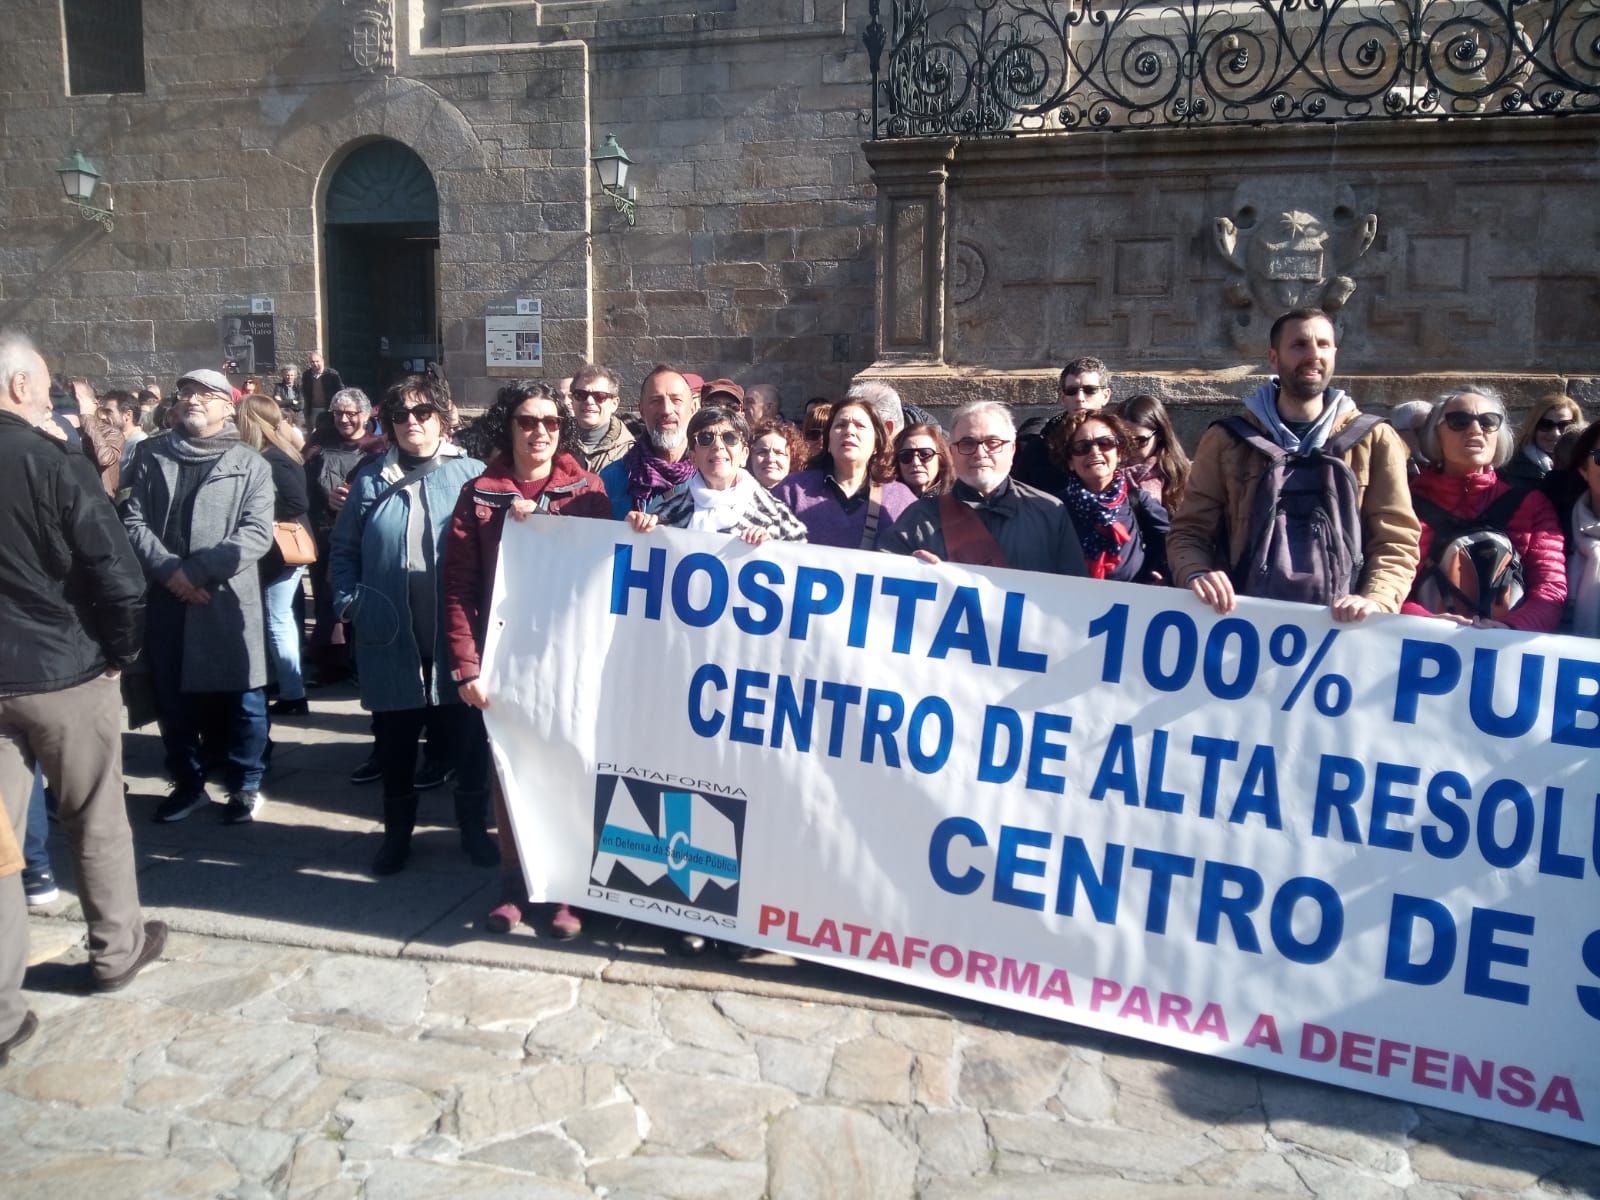 O Morrazo en la Manifestaci�n por la Sanidad en Santiago (17).jpg